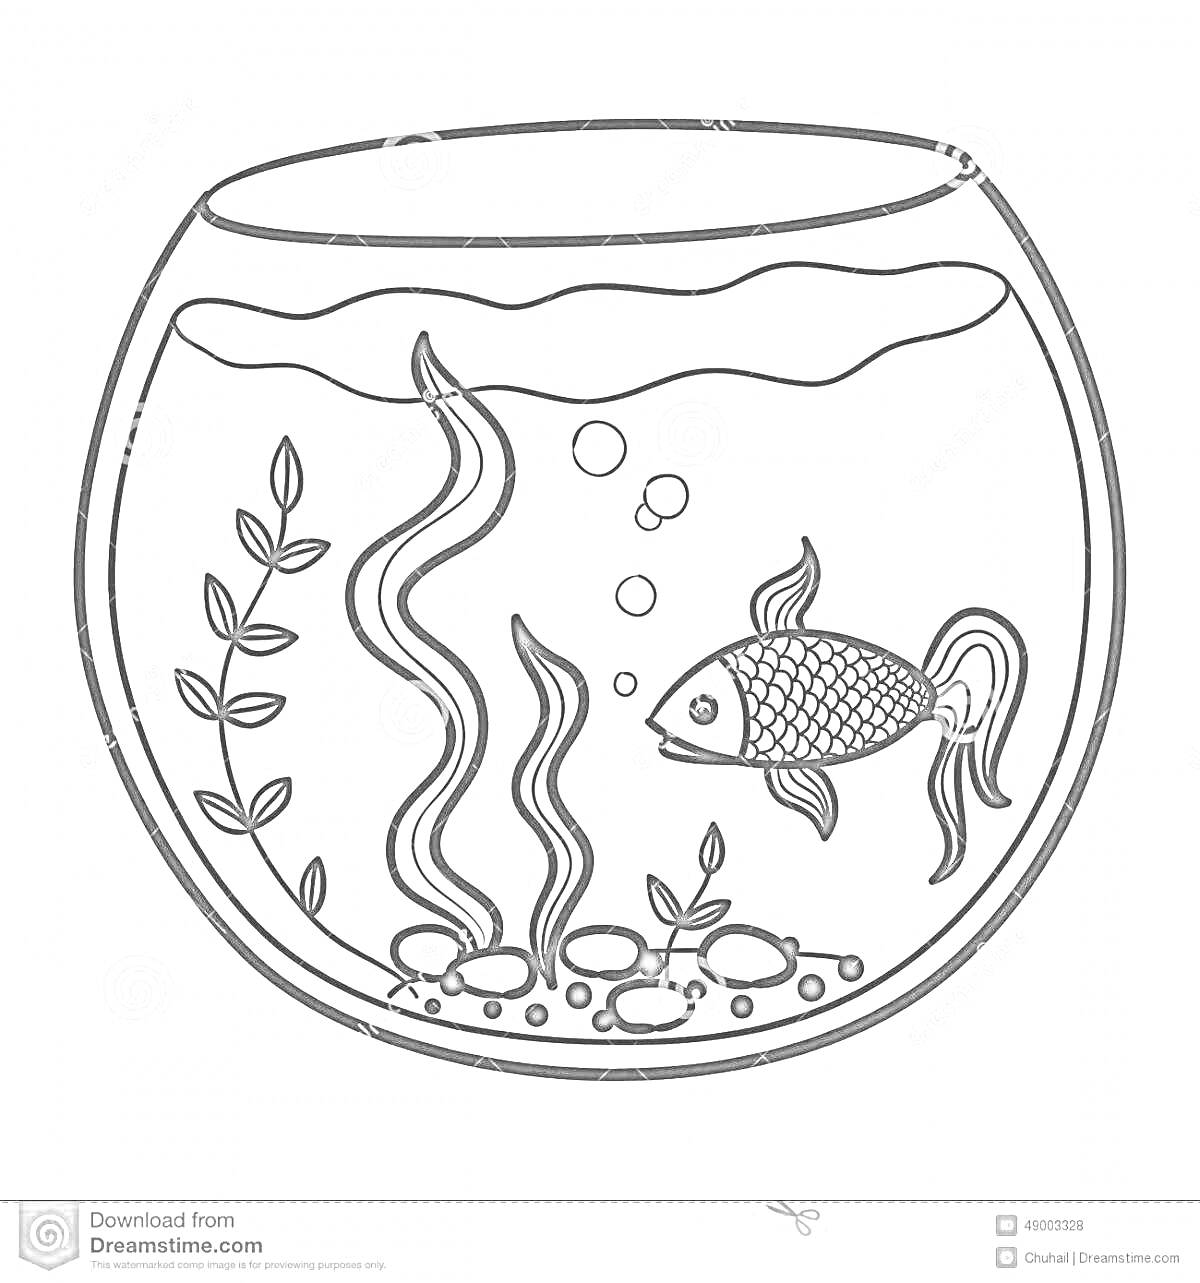 На раскраске изображено: Аквариум, Золотая рыбка, Растения, Водоросли, Камни, Пузыри, Вода, Рыба